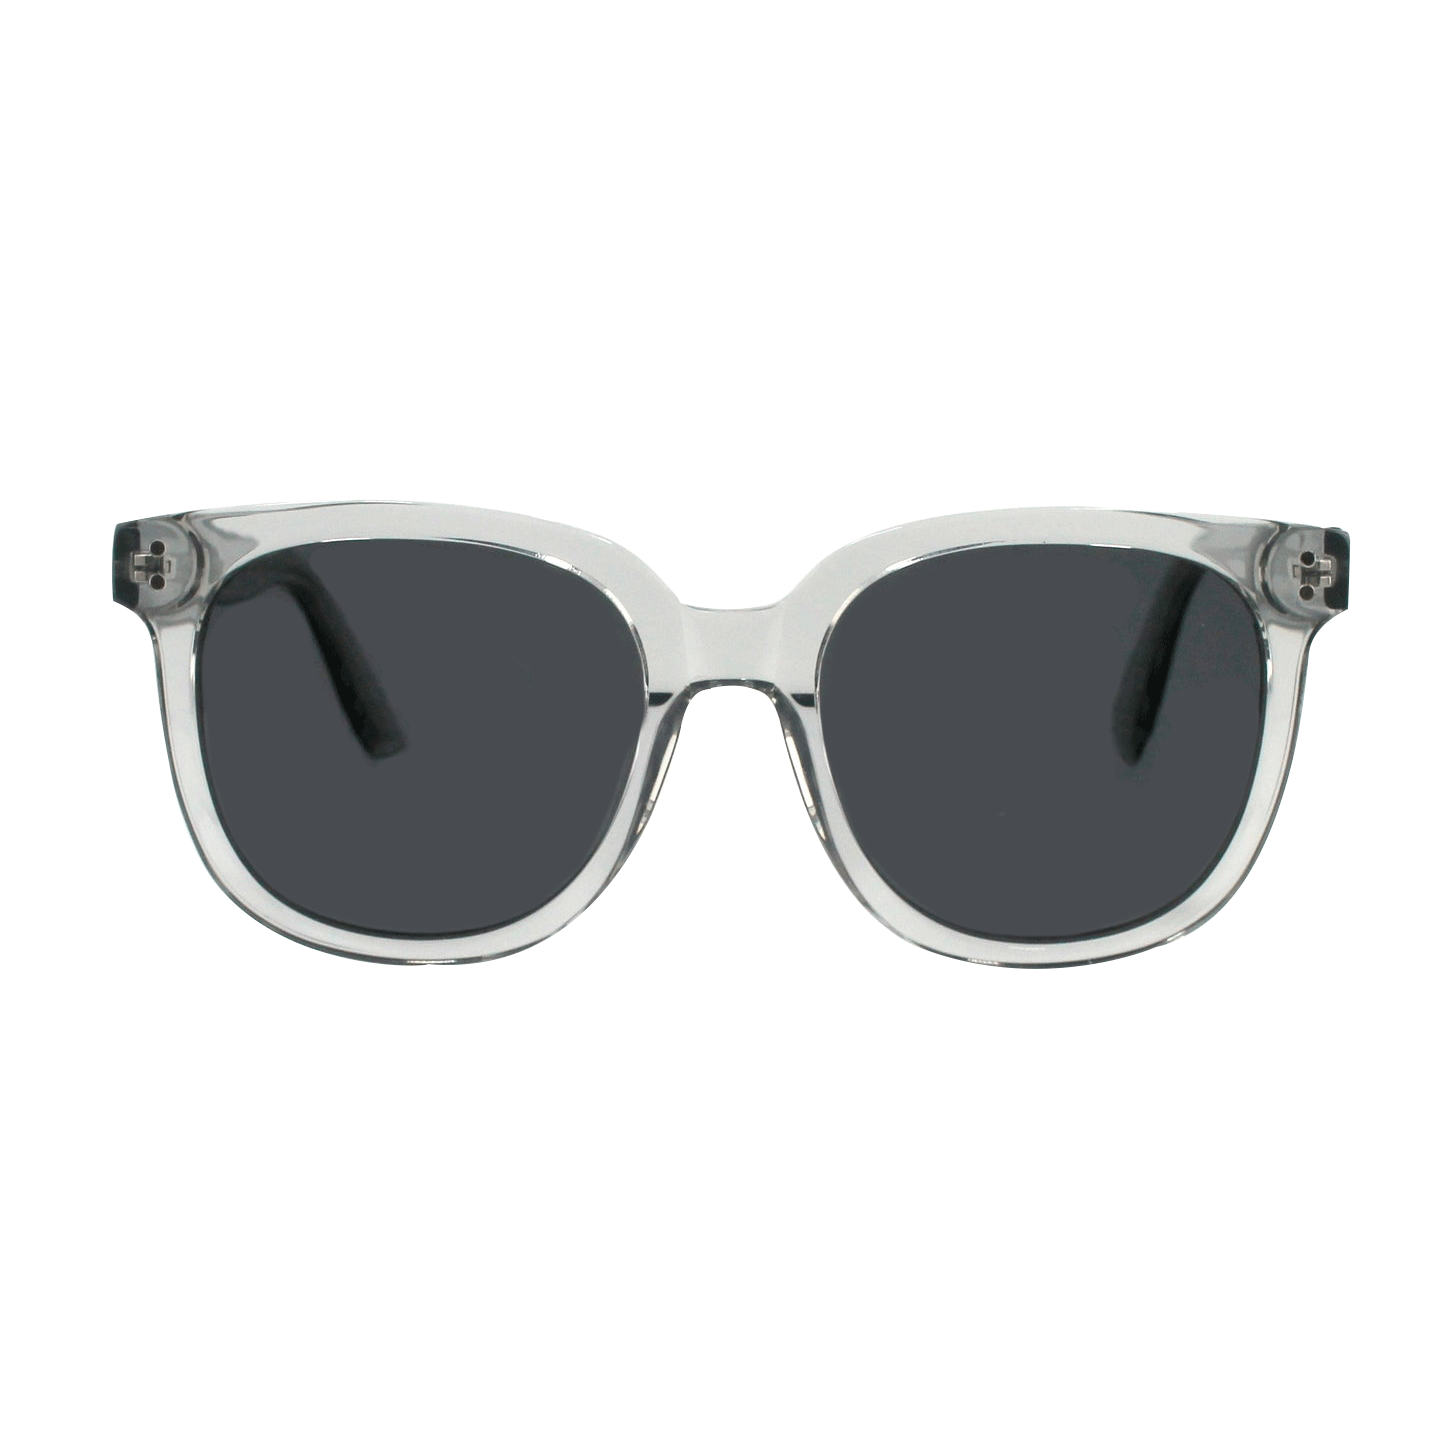 Shades X - Occhiali da sole polarizzati | Modello 29005